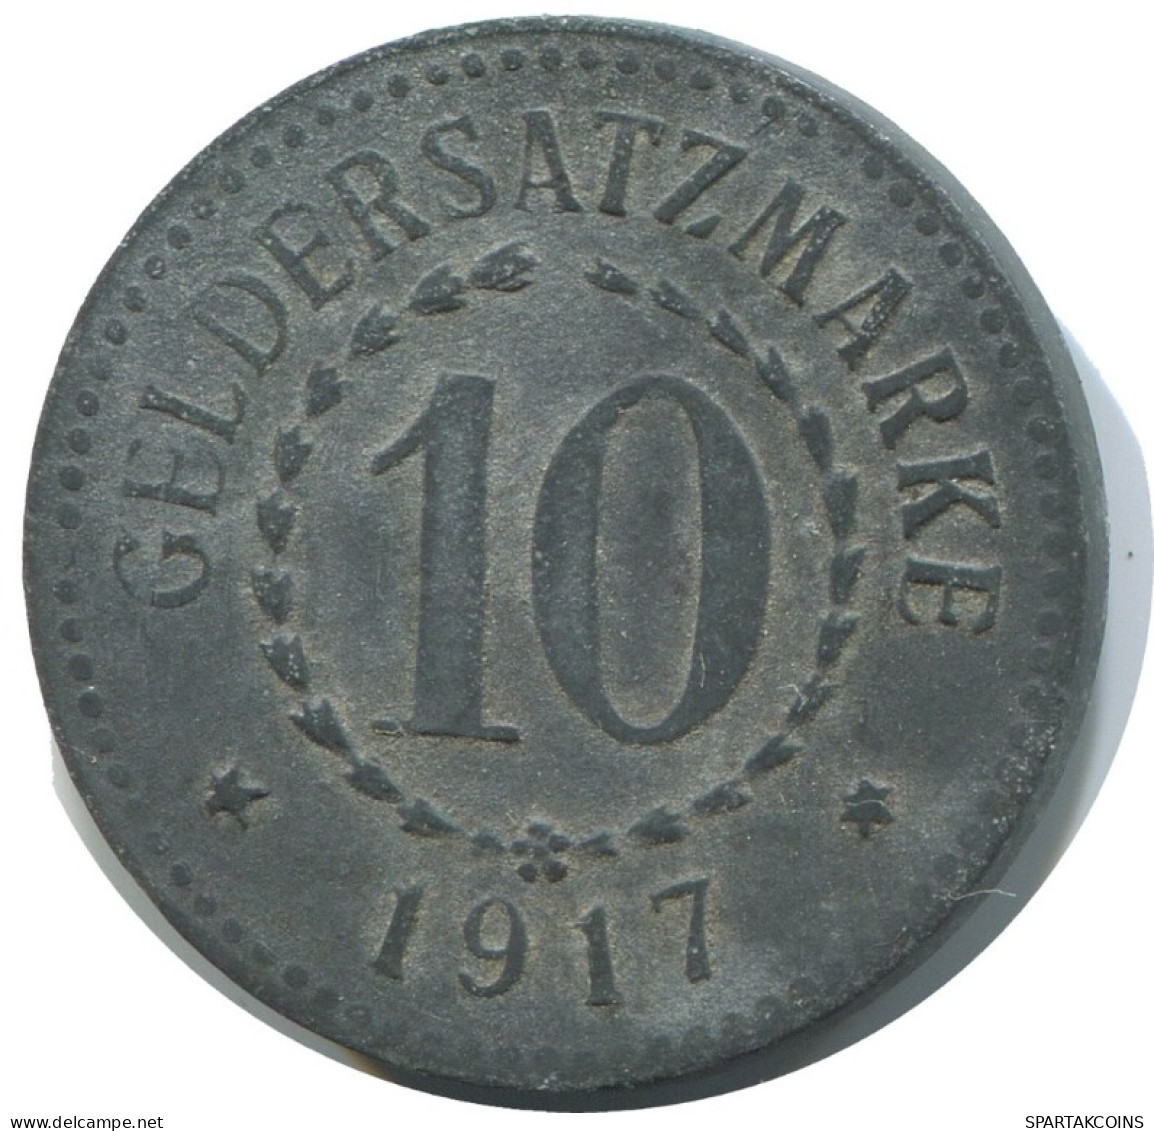 10 PFENNIG 1917 STADT POSEN DEUTSCHLAND Münze GERMANY #AD642.9.D.A - 10 Pfennig